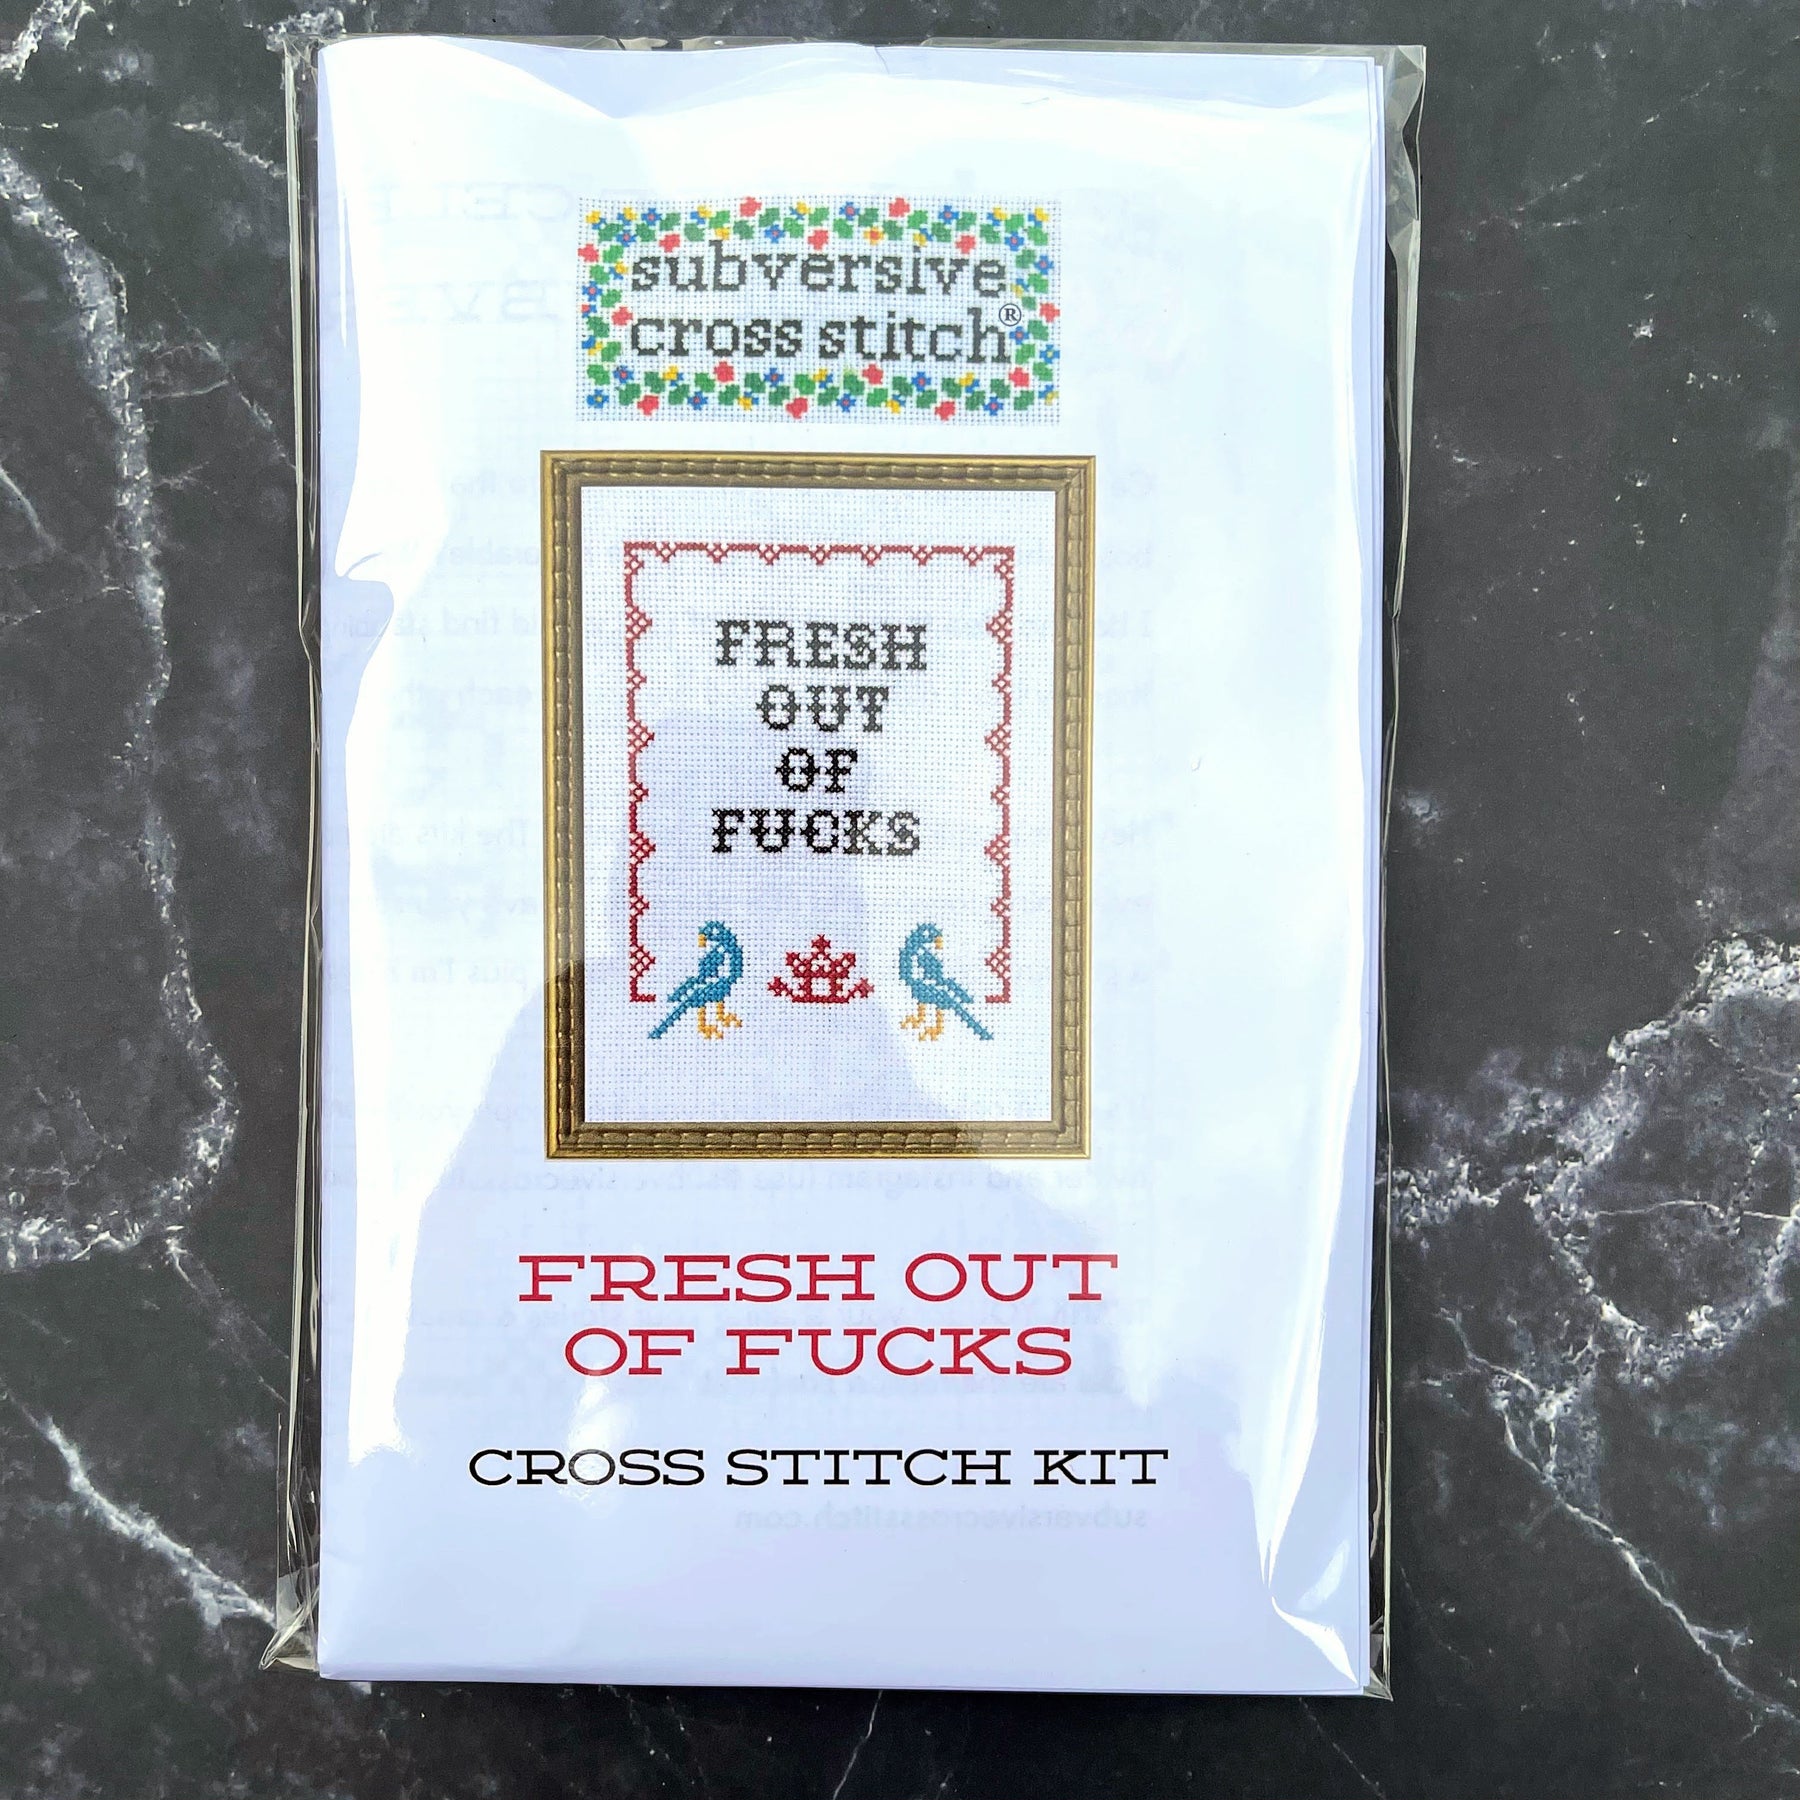 Fresh Out of F*cks - Subversive Cross Stitch - Cross Stitch Kit